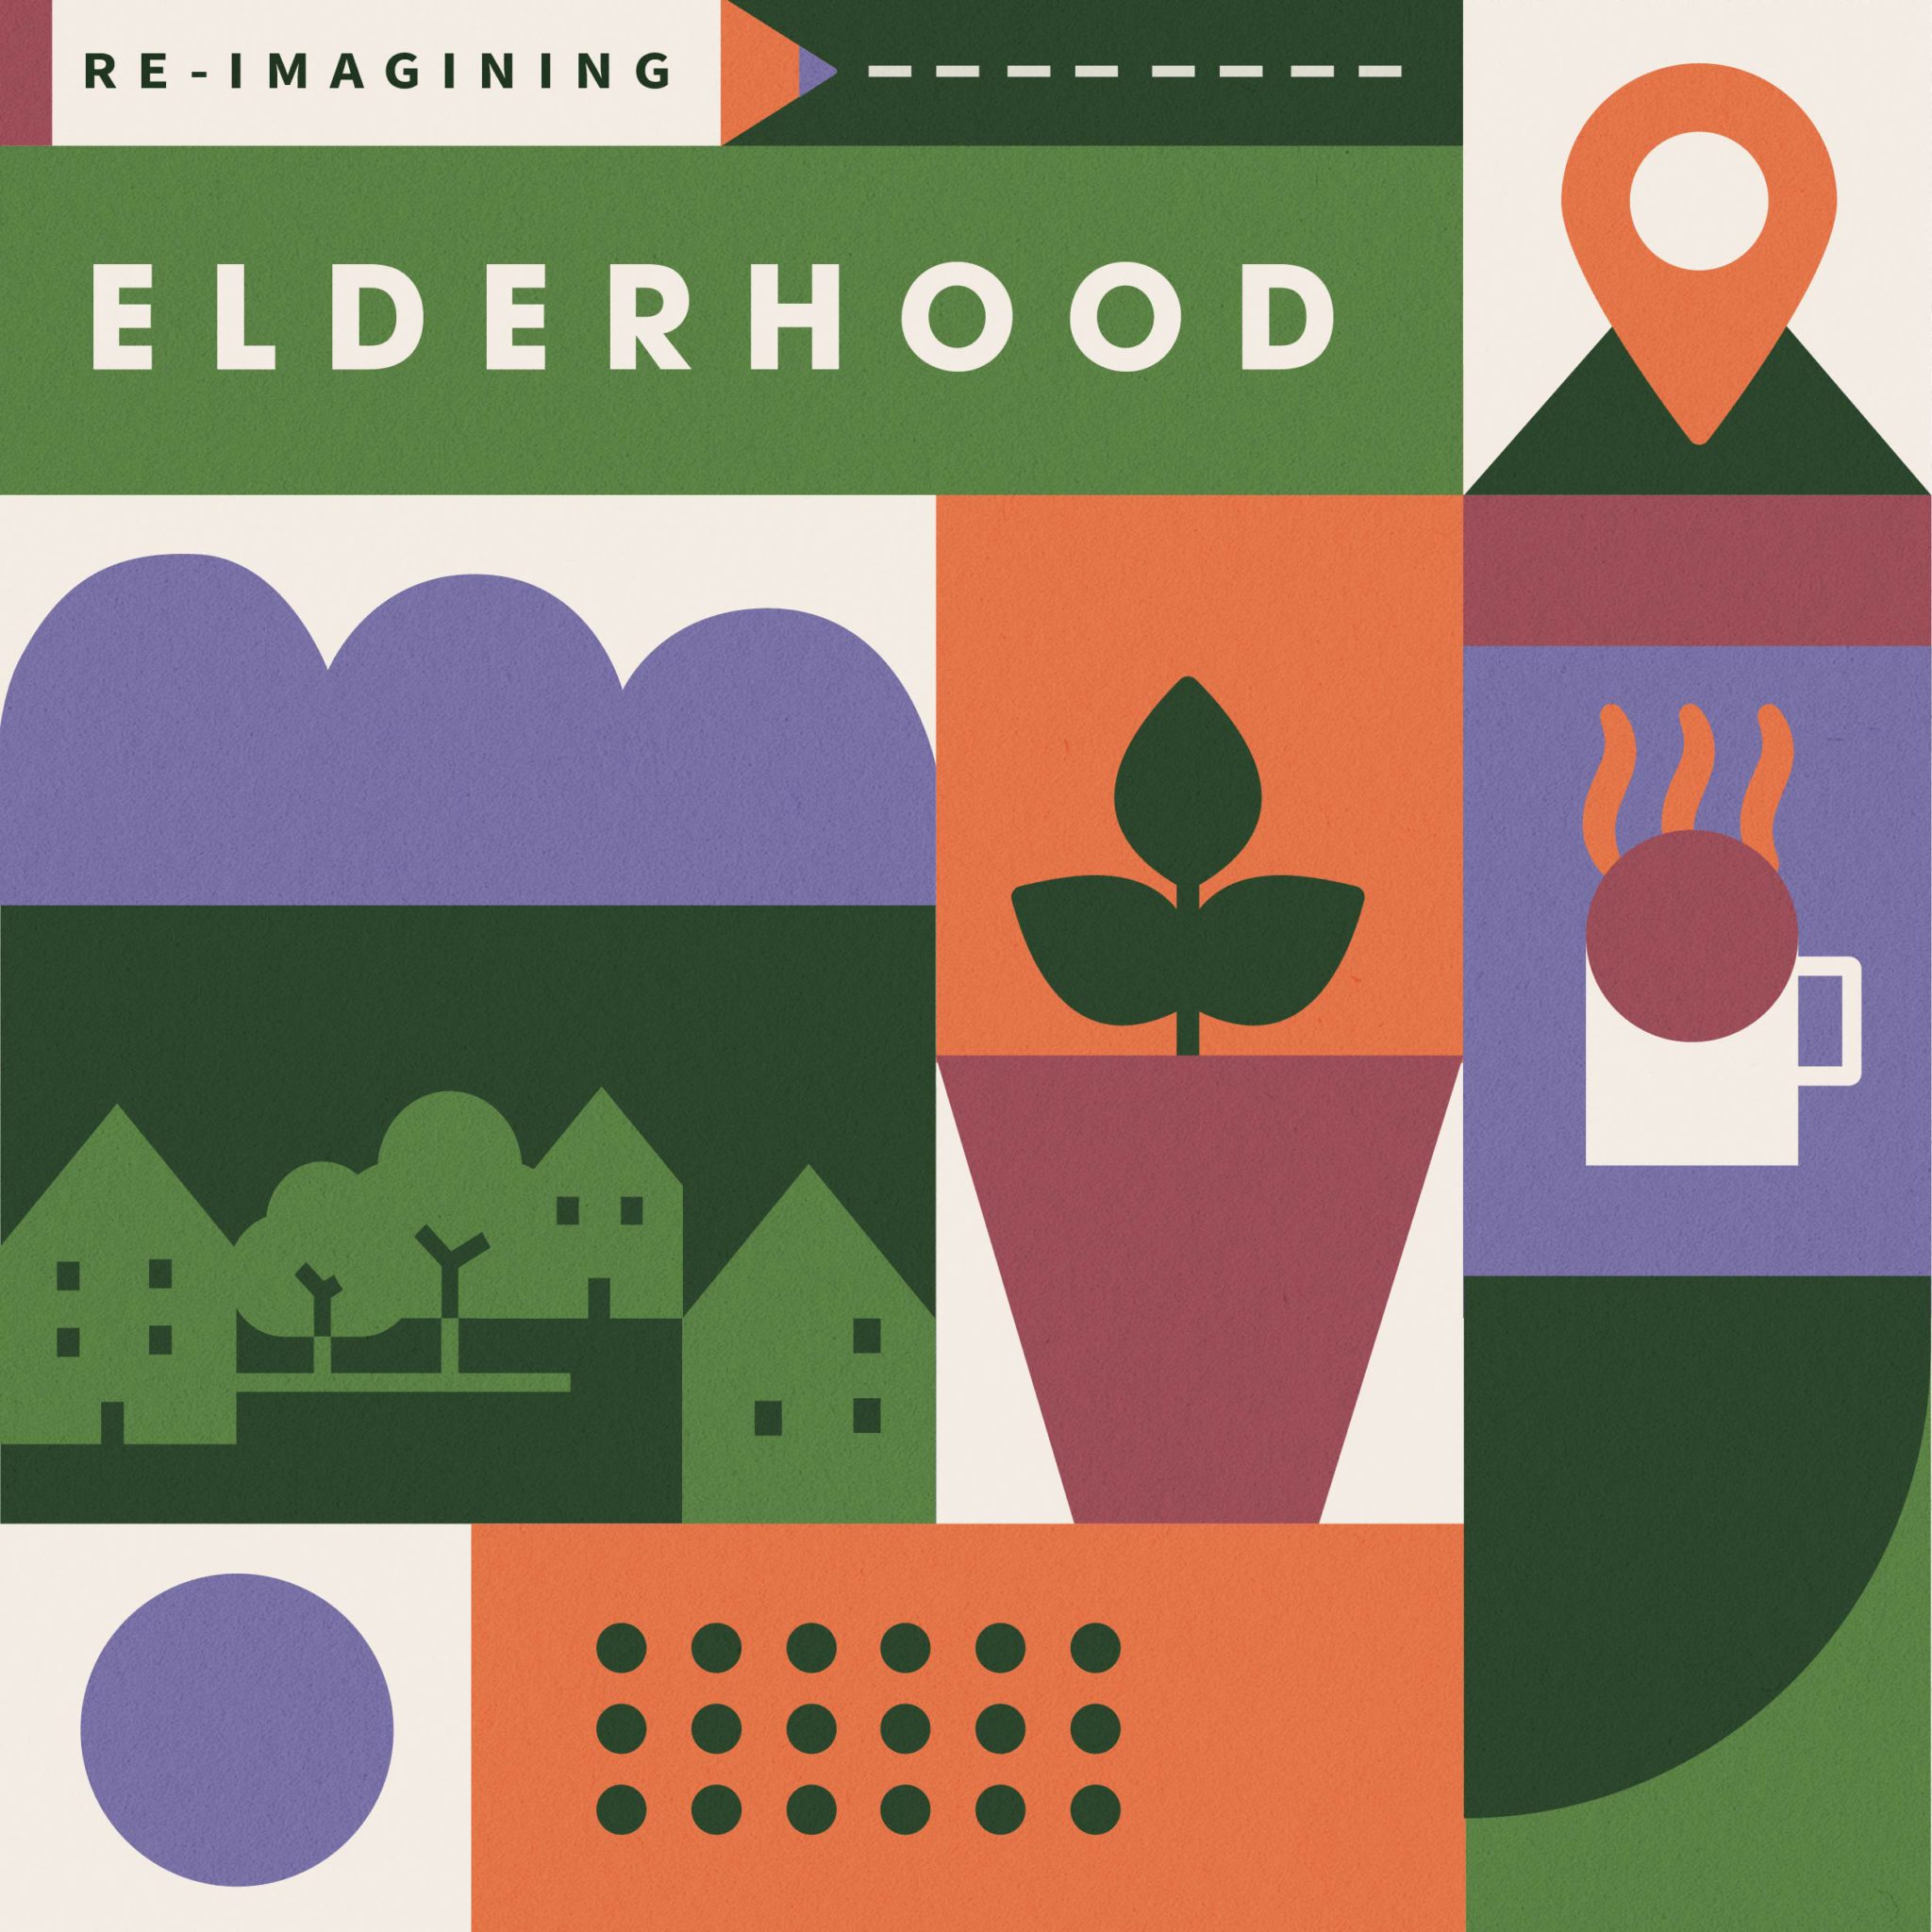 Reimagining Elderhood: open call for architects